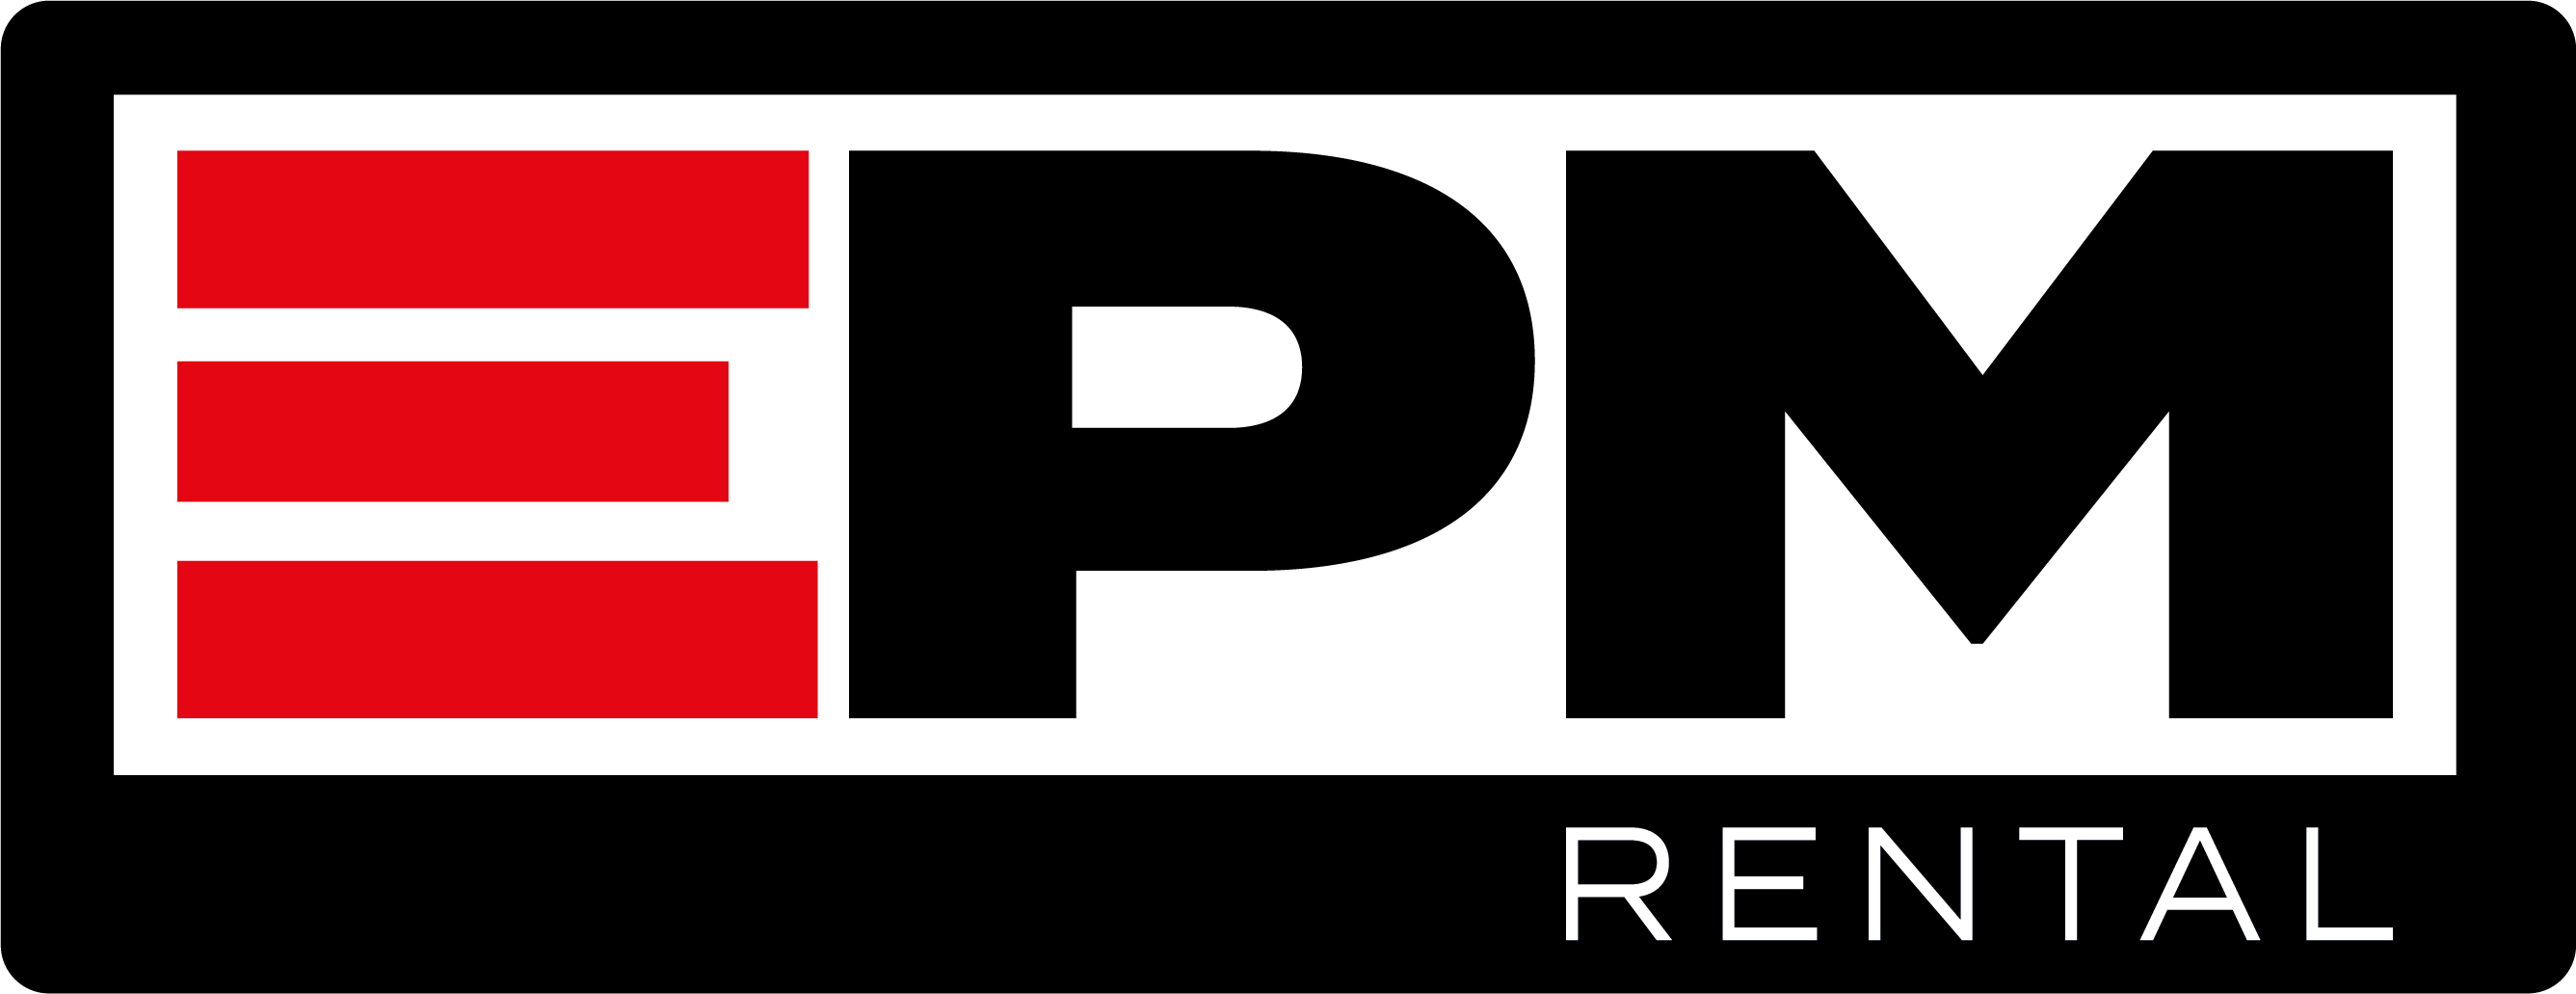 EPM logo 01 RGB